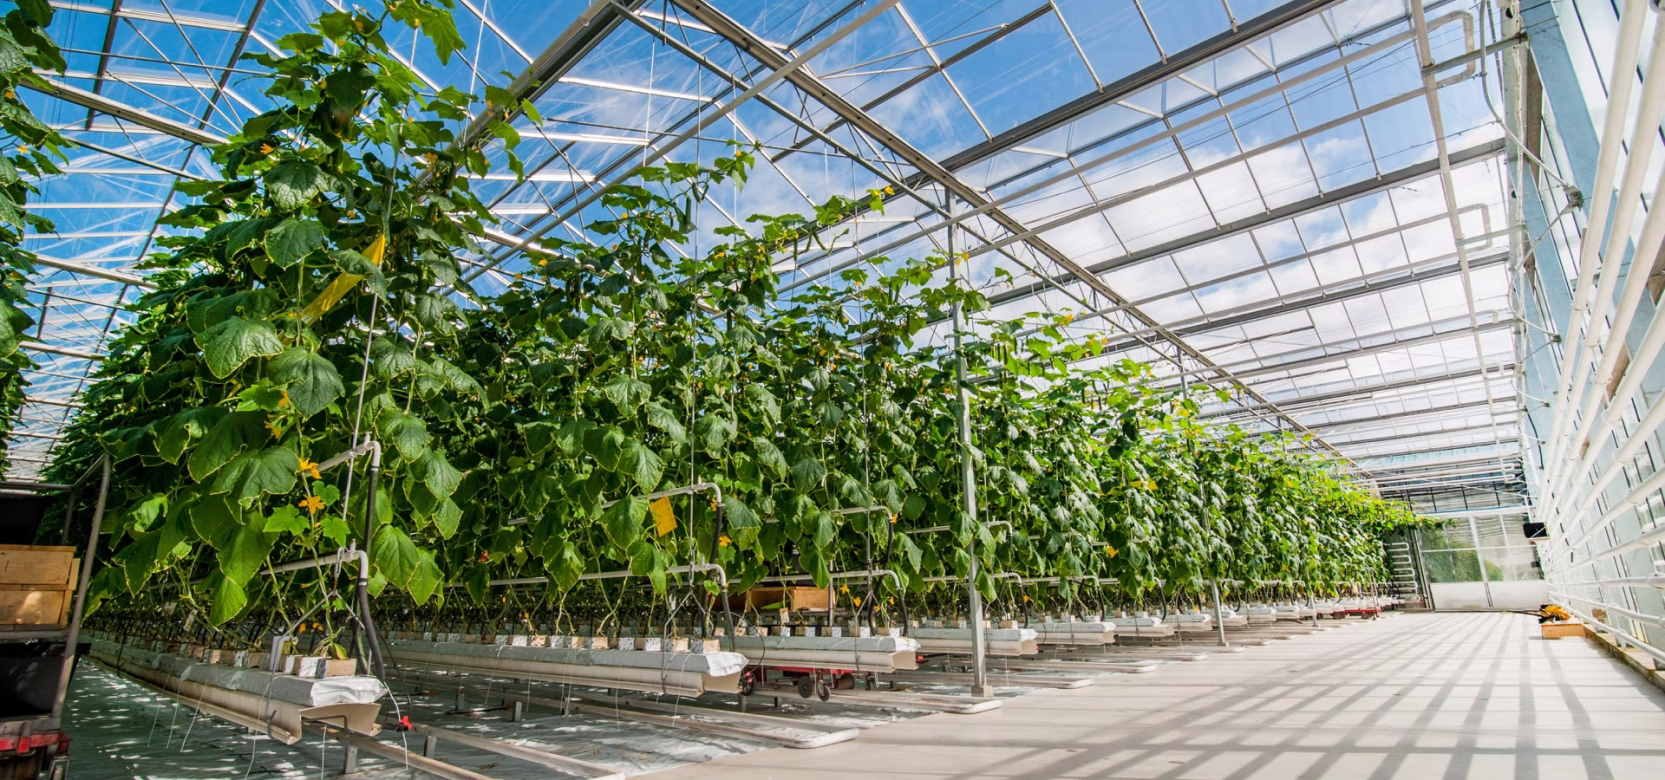 کشاورزی سیب سبز اجرای گلخانه های کوچک و بزرگ فروش سازه و تجهیزات گلخانه